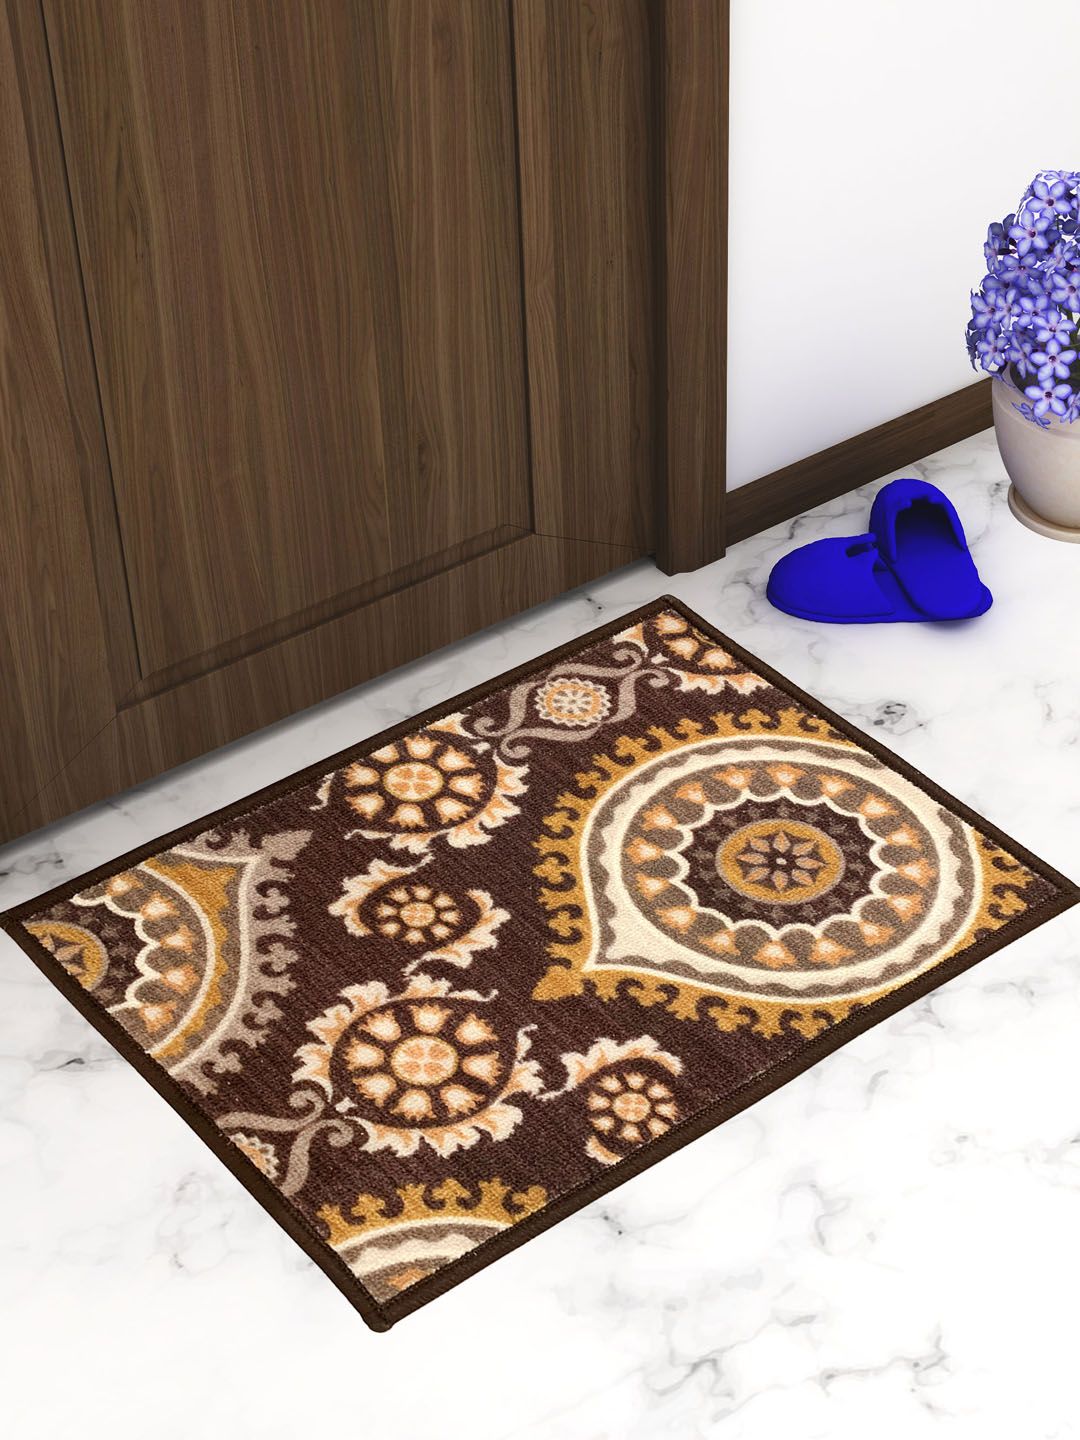 Athom Trendz Set Of 2 Brown & Beige Printed Anti-Skid Doormats Price in India